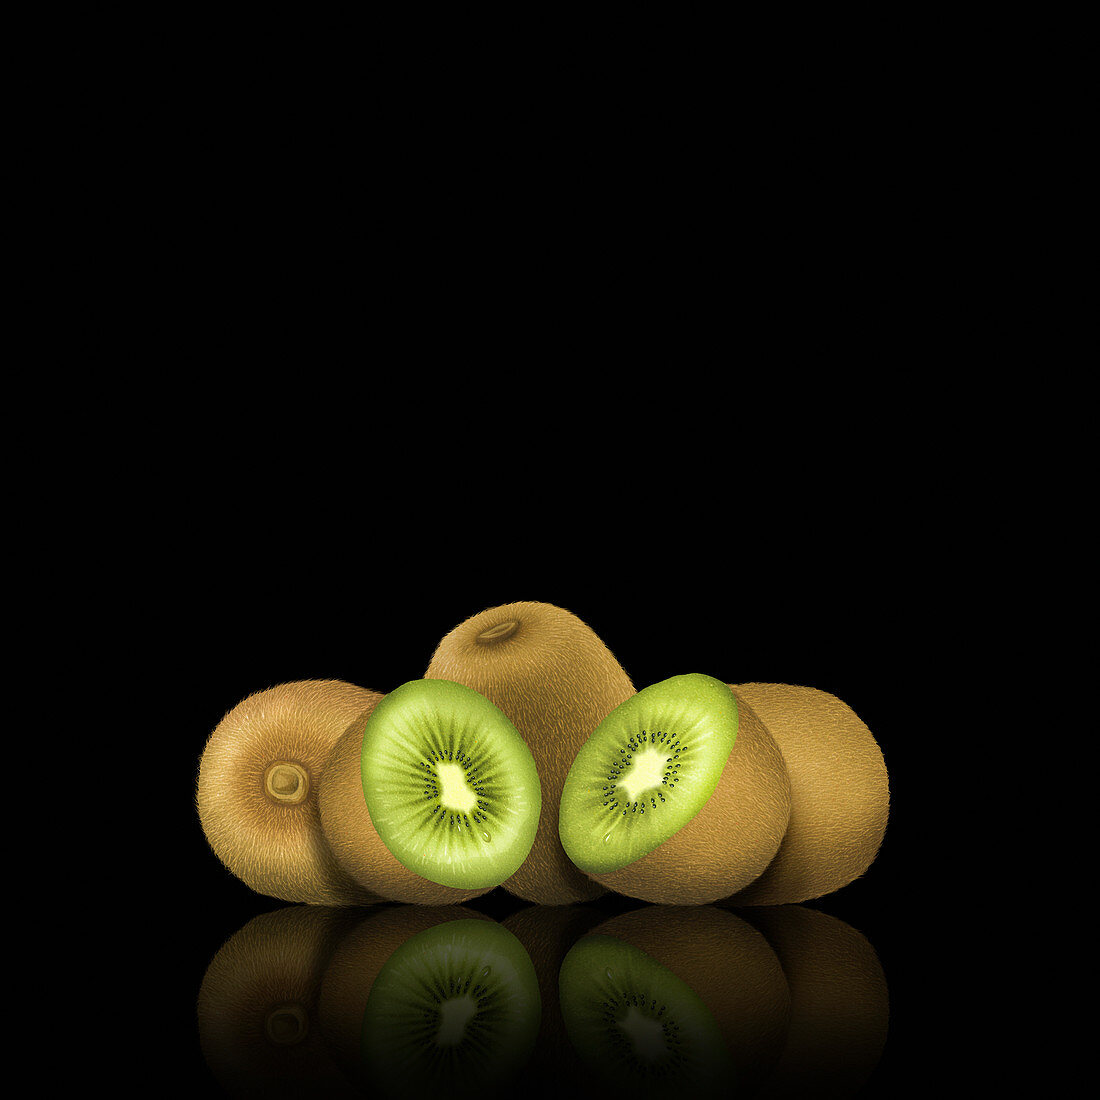 Whole and cut kiwi fruit, illustration